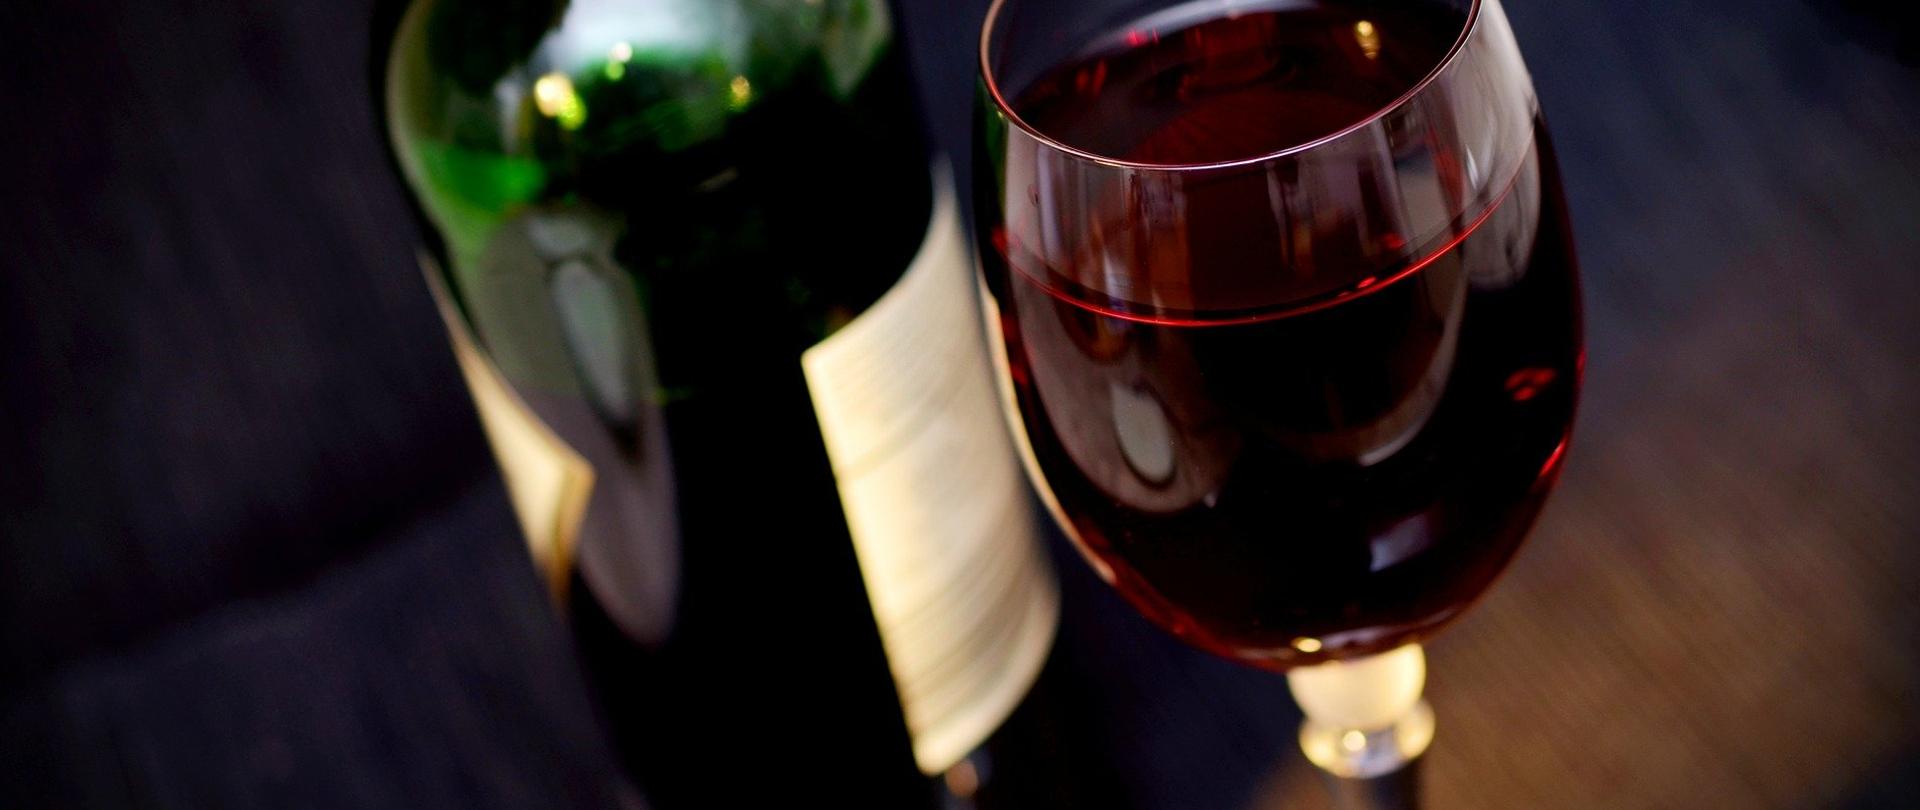 Na zdjęciu znajduje się butelka z czerwonym winem, obok której stoi kieliszek z czerwonym winem.